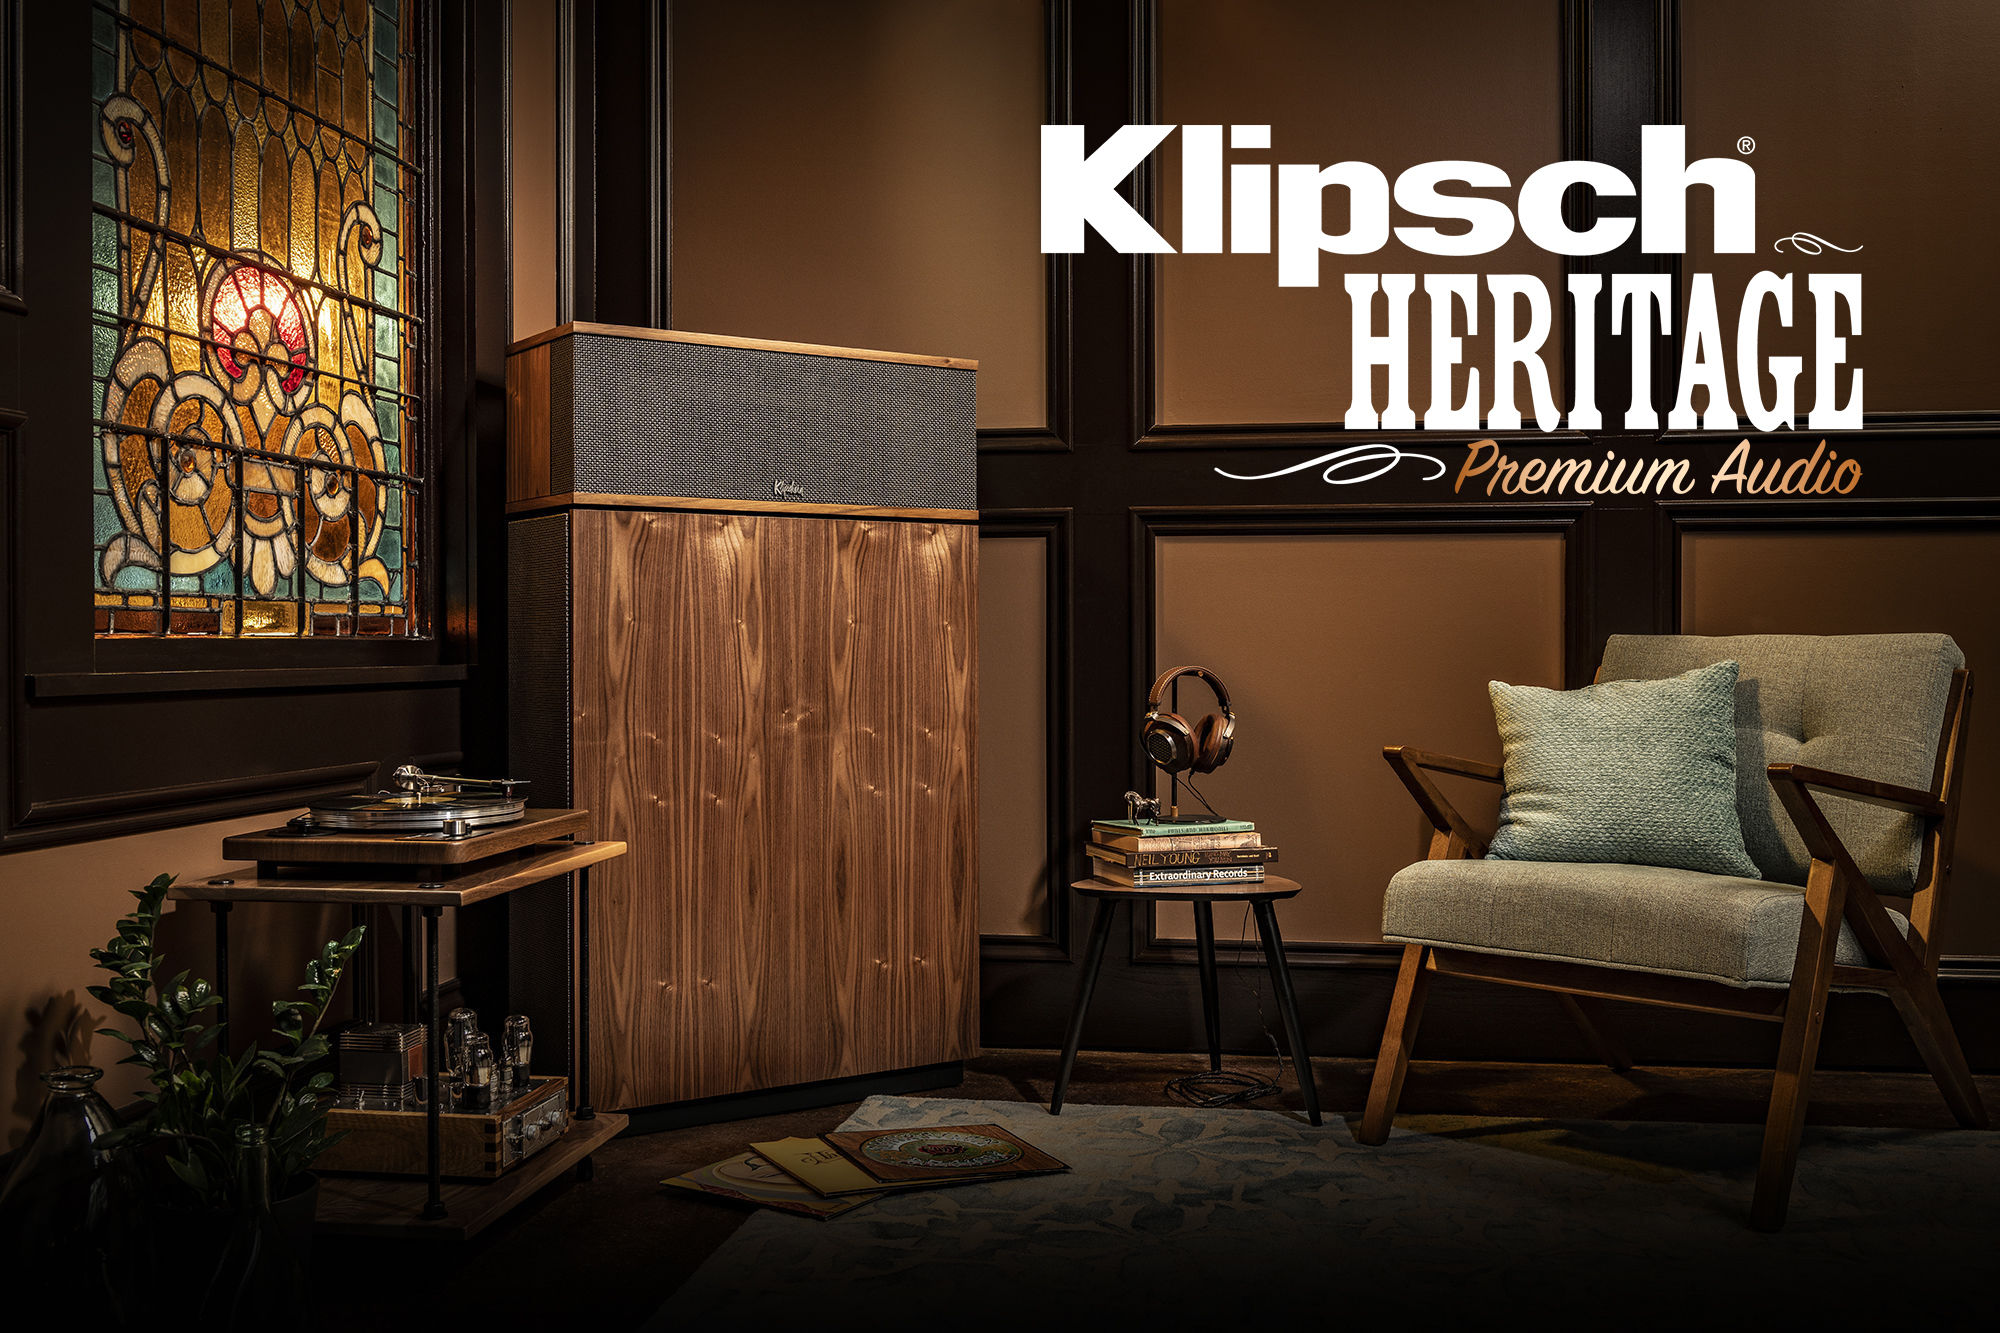 Heritage Premium Audio | Klipsch